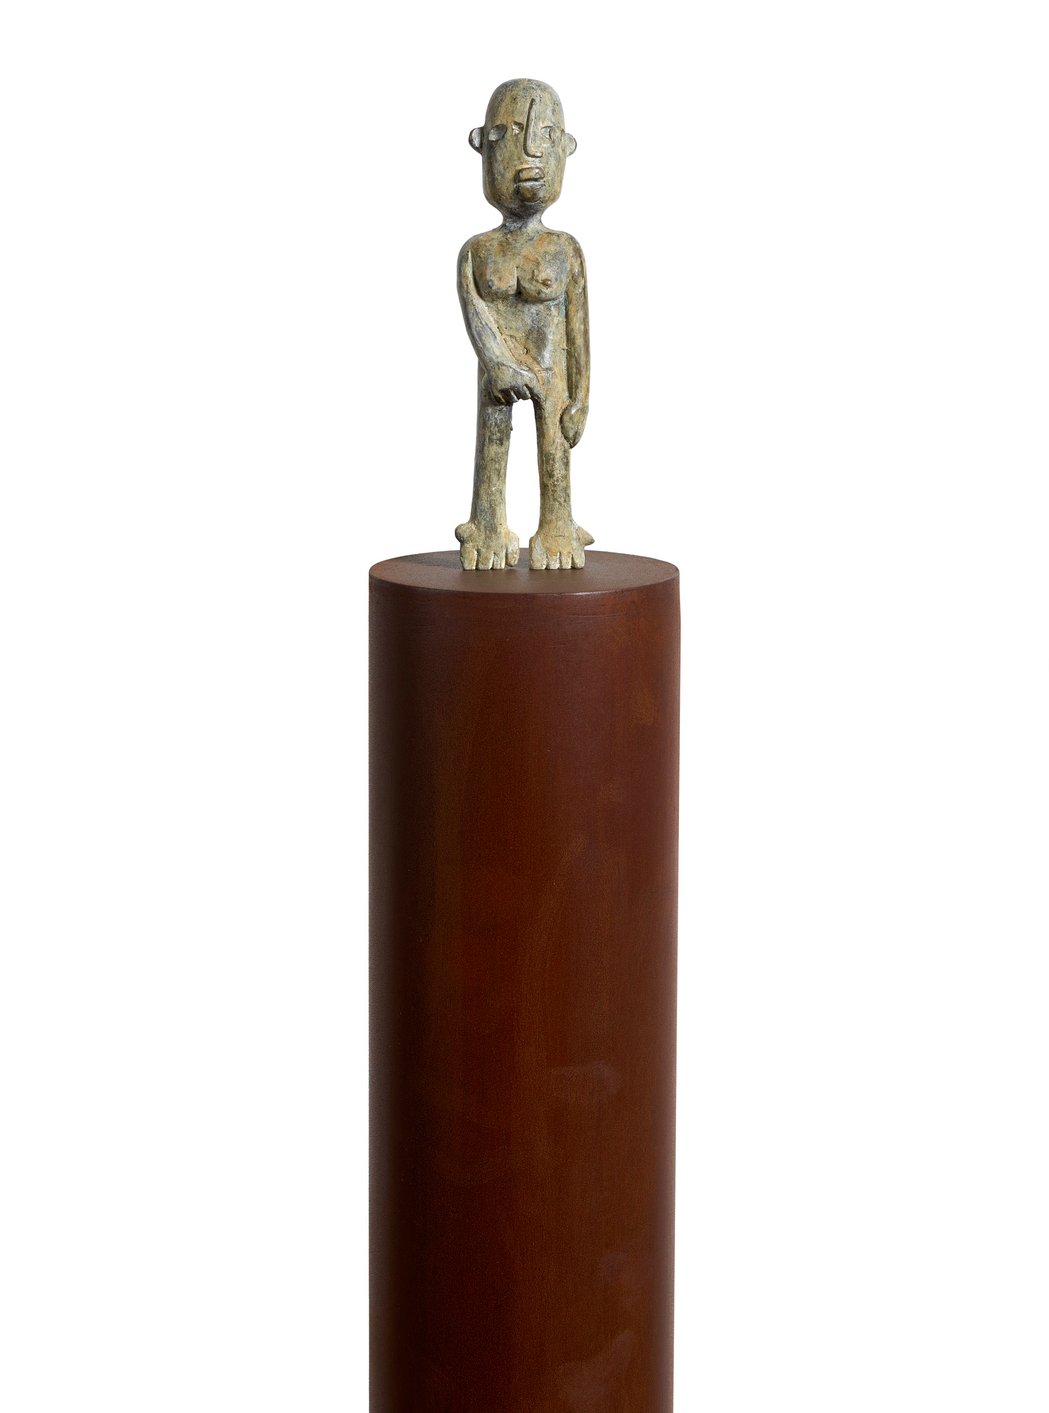 Up (detalle), bronce y hierro forjado, 125x 20 x 20 cm, autor Joaquín Barón